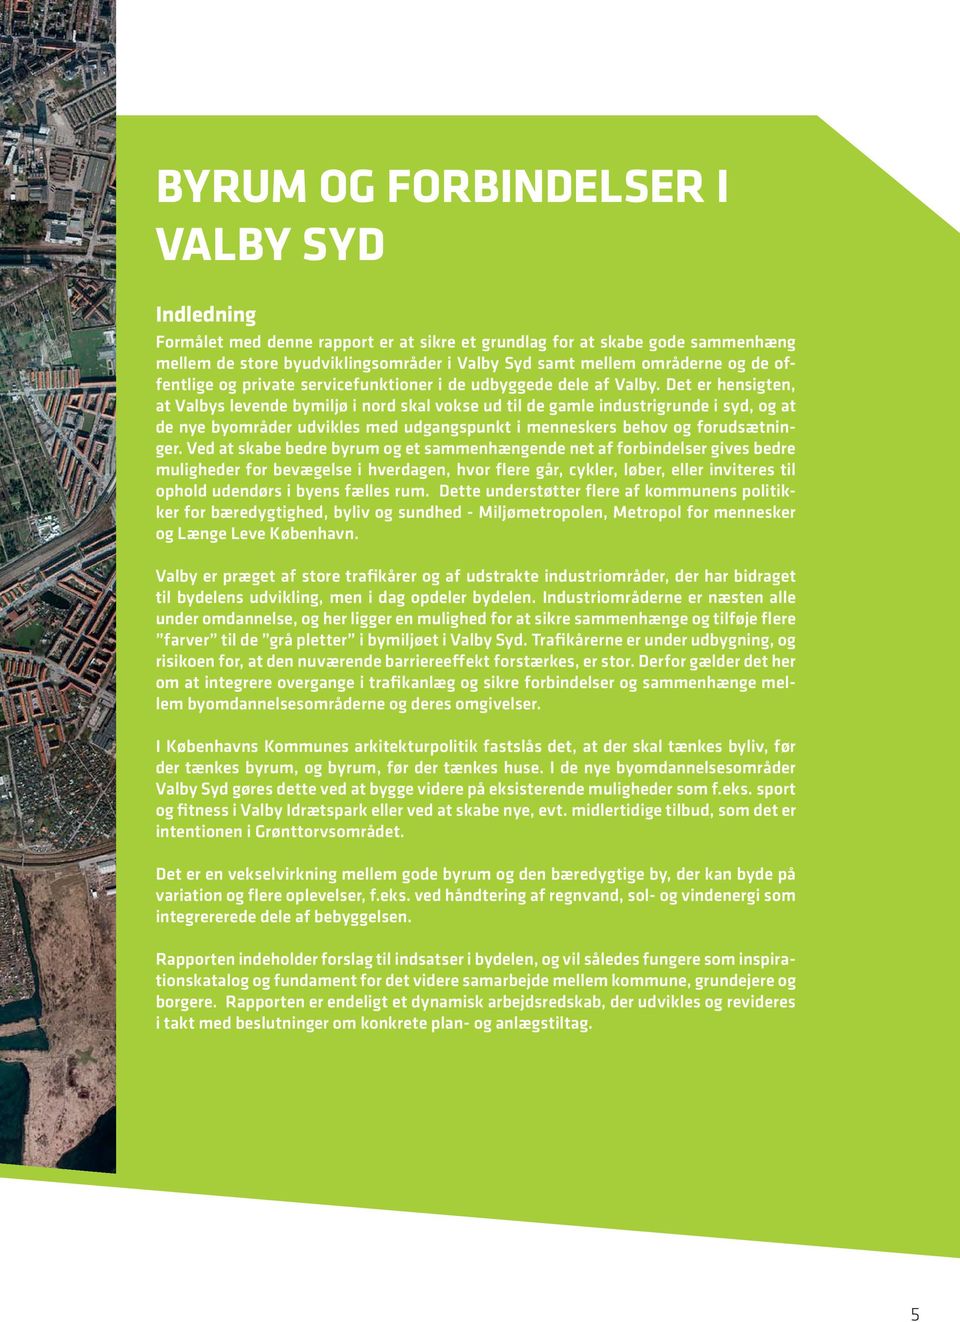 Det er henigten, at Valby levende bymiljø i nord kal voke ud til de gamle indutrigrunde i yd, og at de nye byområder udvikle med udgangpunkt i menneker behov og forudætninger.